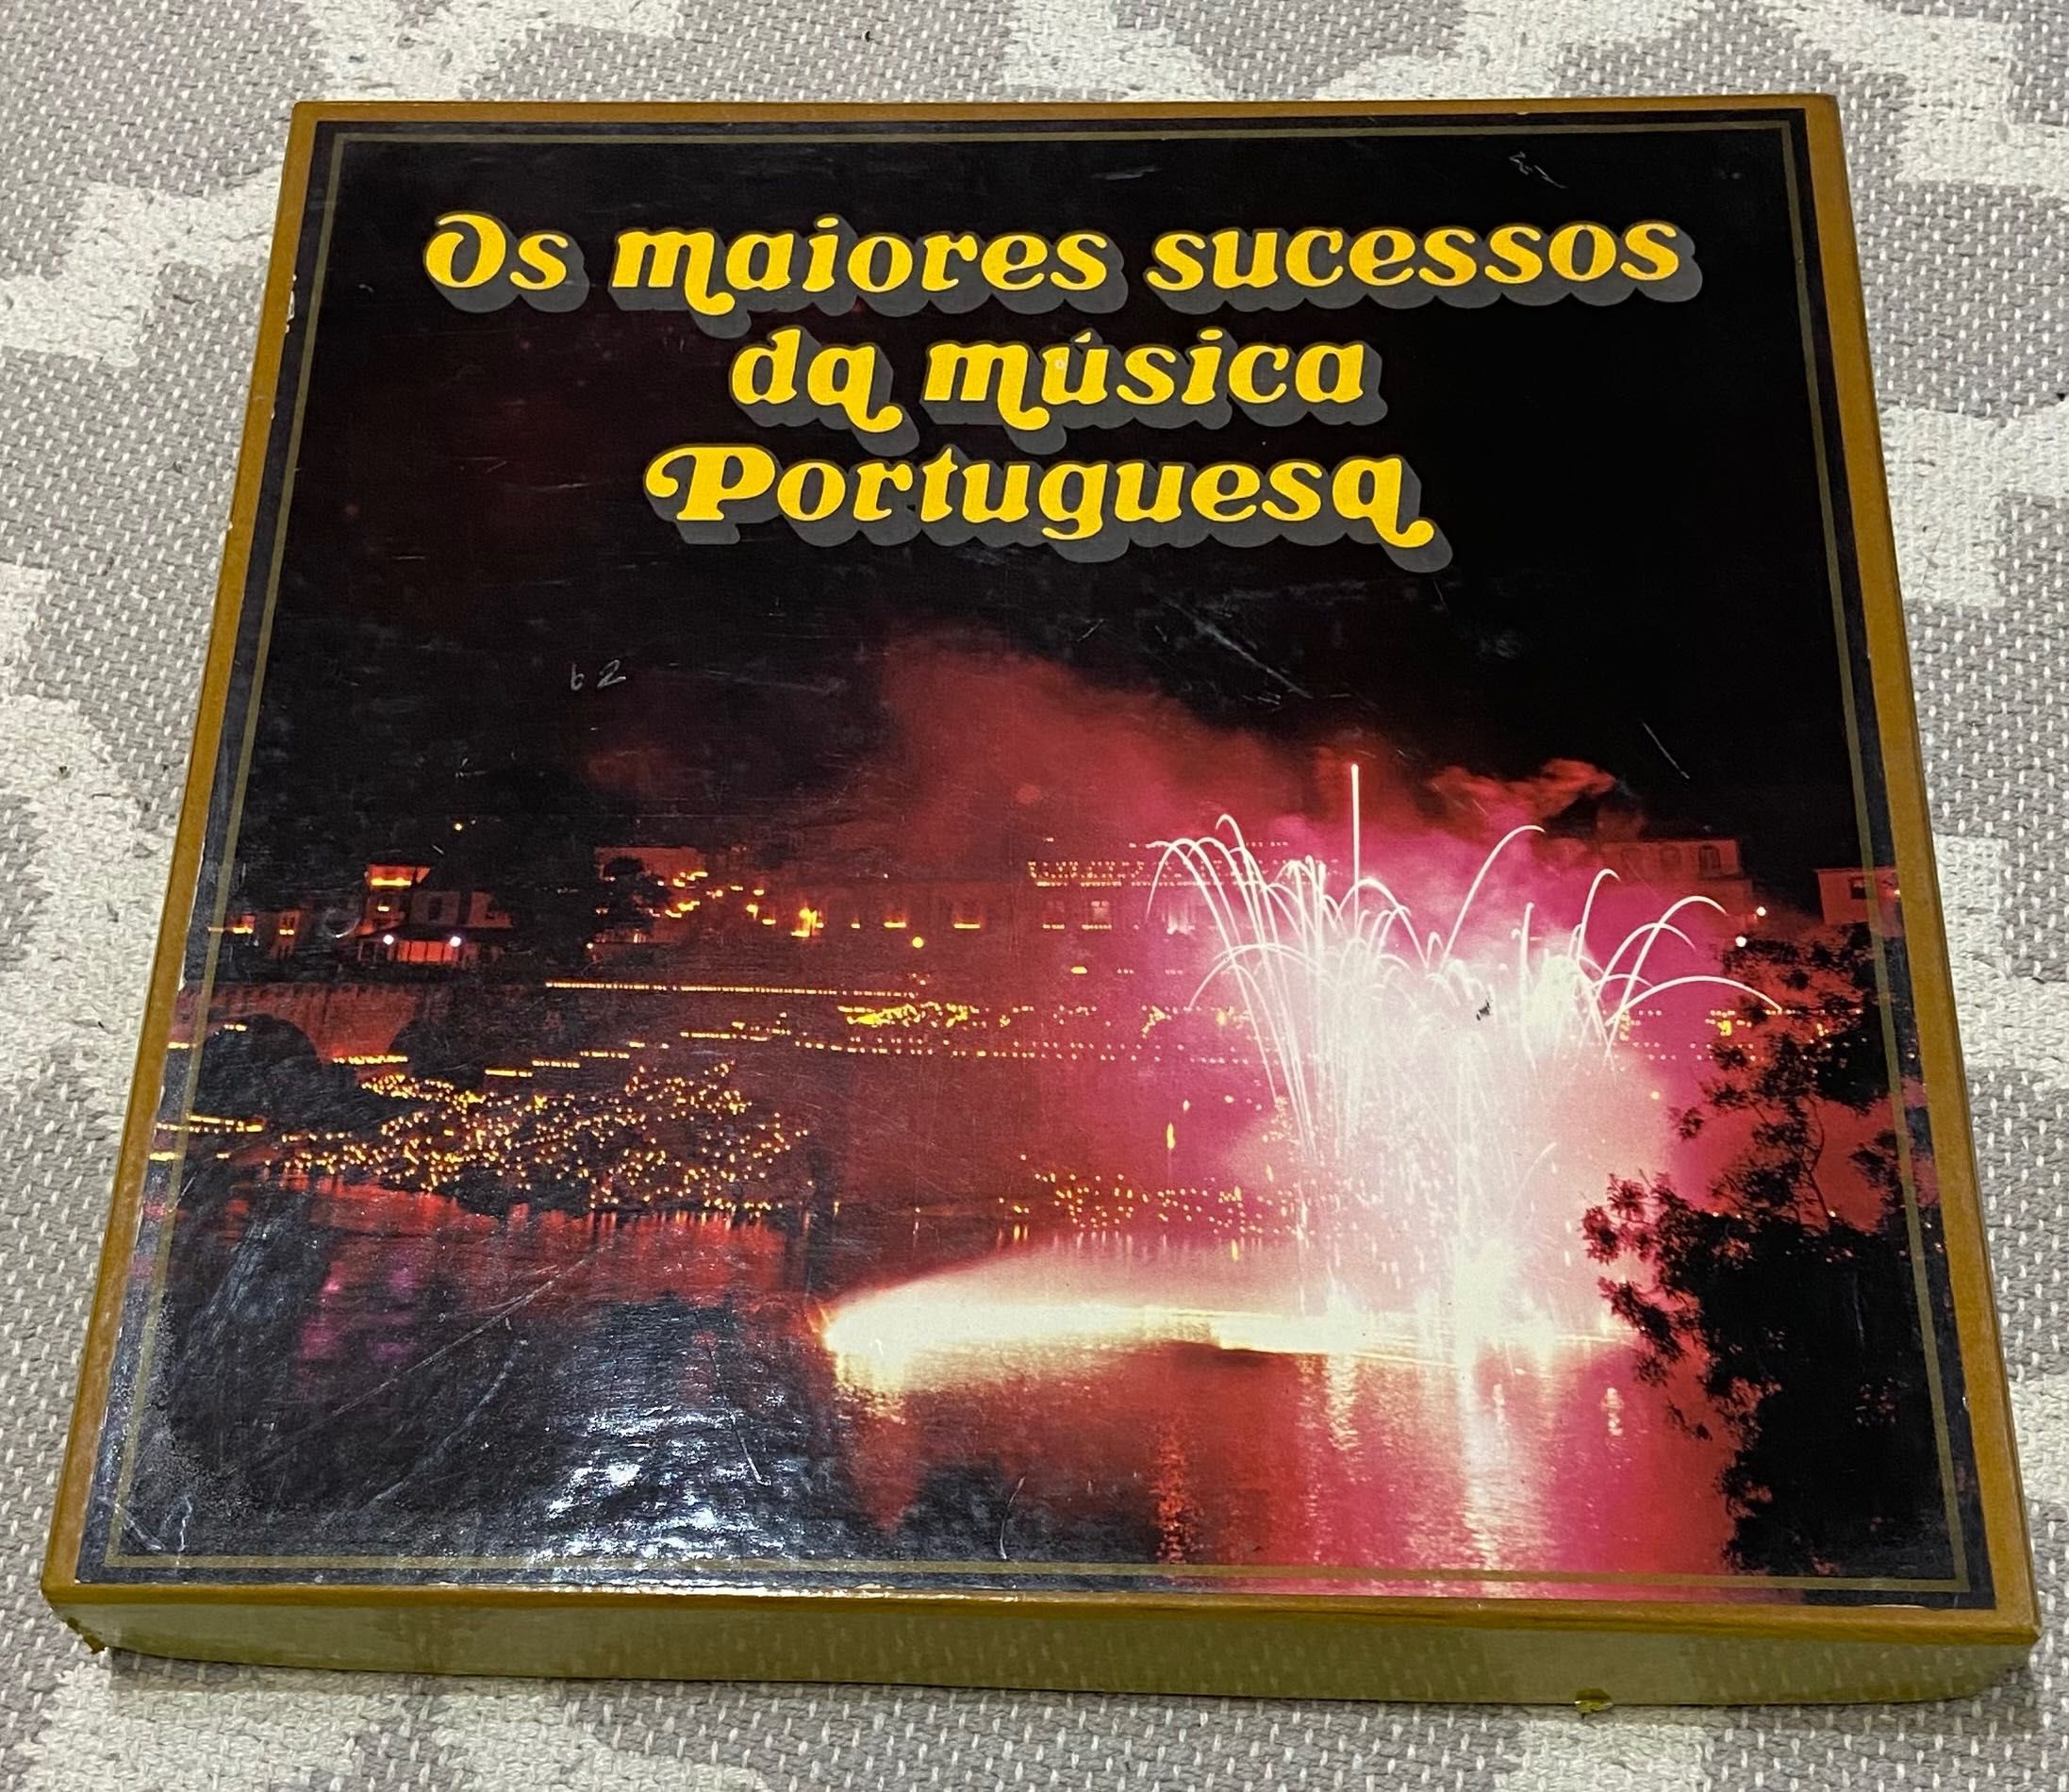 Coleção de discos vinis “Os maiores sucessos da música portuguesa”